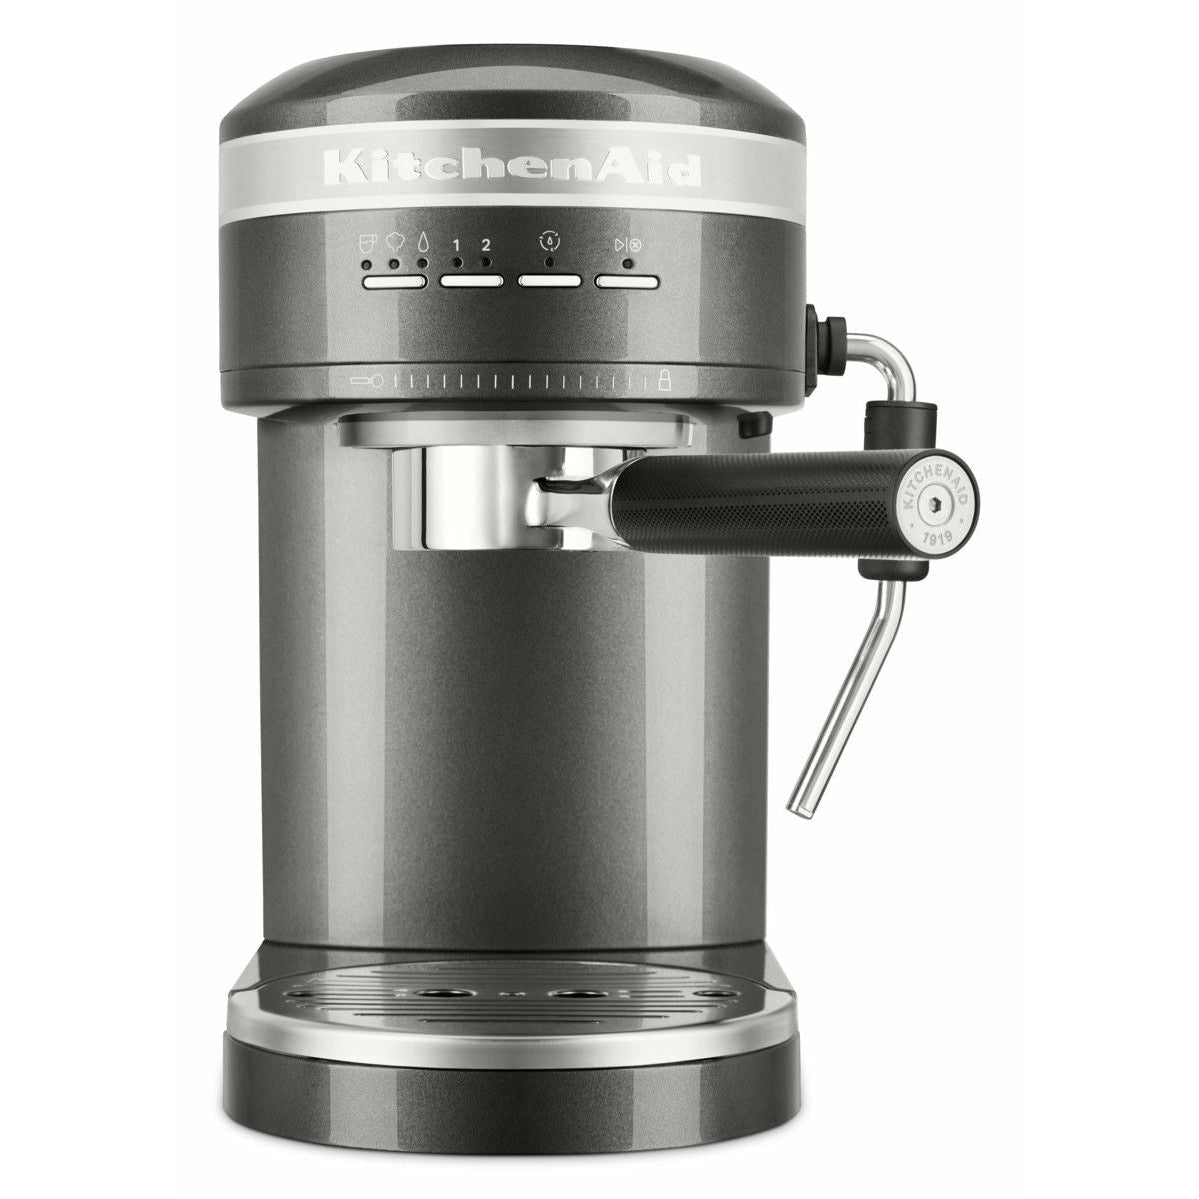 KitchenAid 5KES6503 Artisan Espresso Machine, Medallion Silver